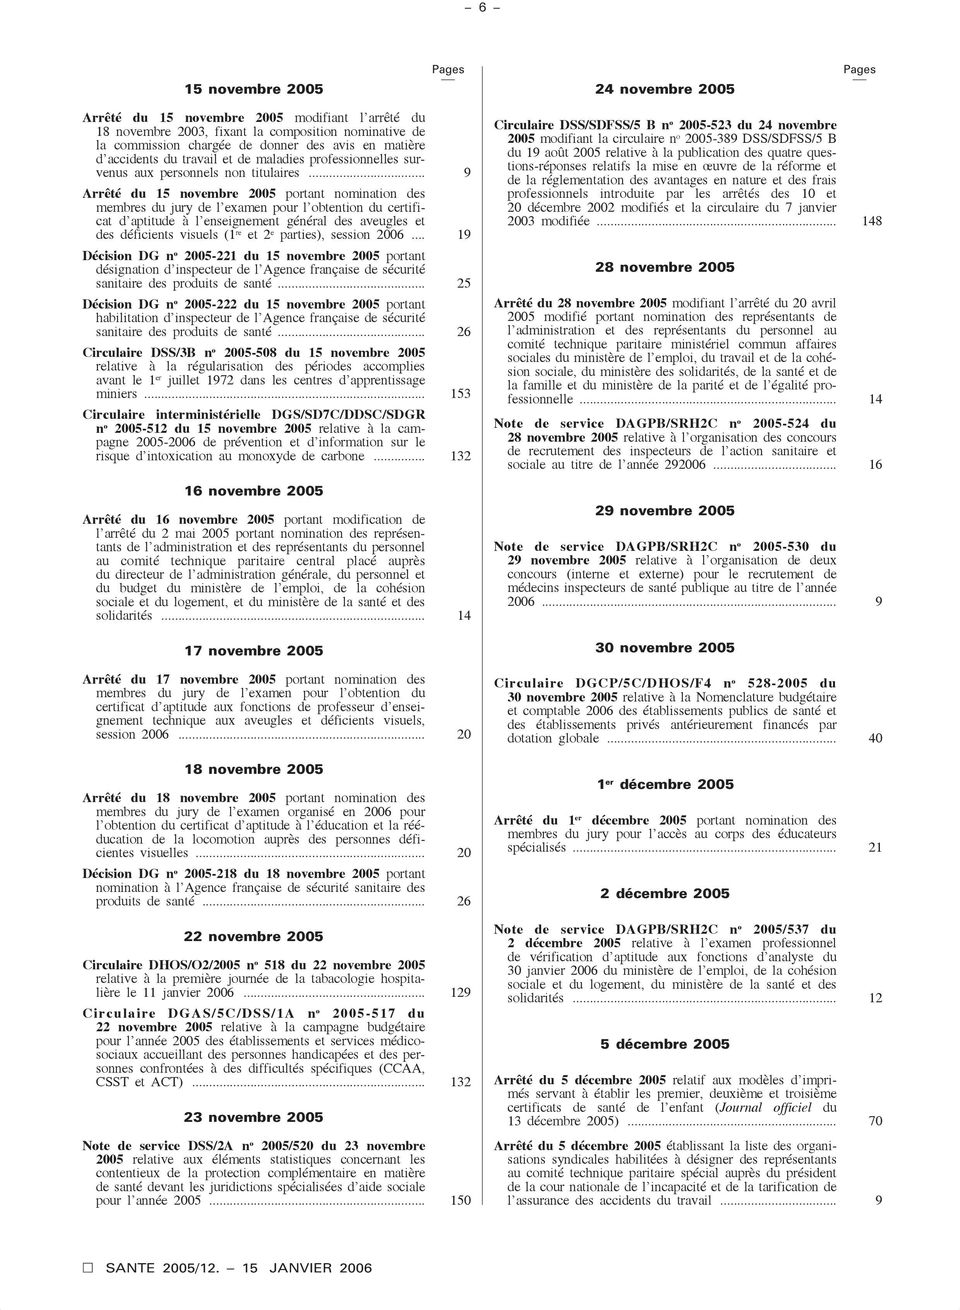 .. 9 Arrêté du 15 novembre 2005 portant nomination des membres du jury de l examen pour l obtention du certificat d aptitude à l enseignement général des aveugles et des déficients visuels (1 re et 2